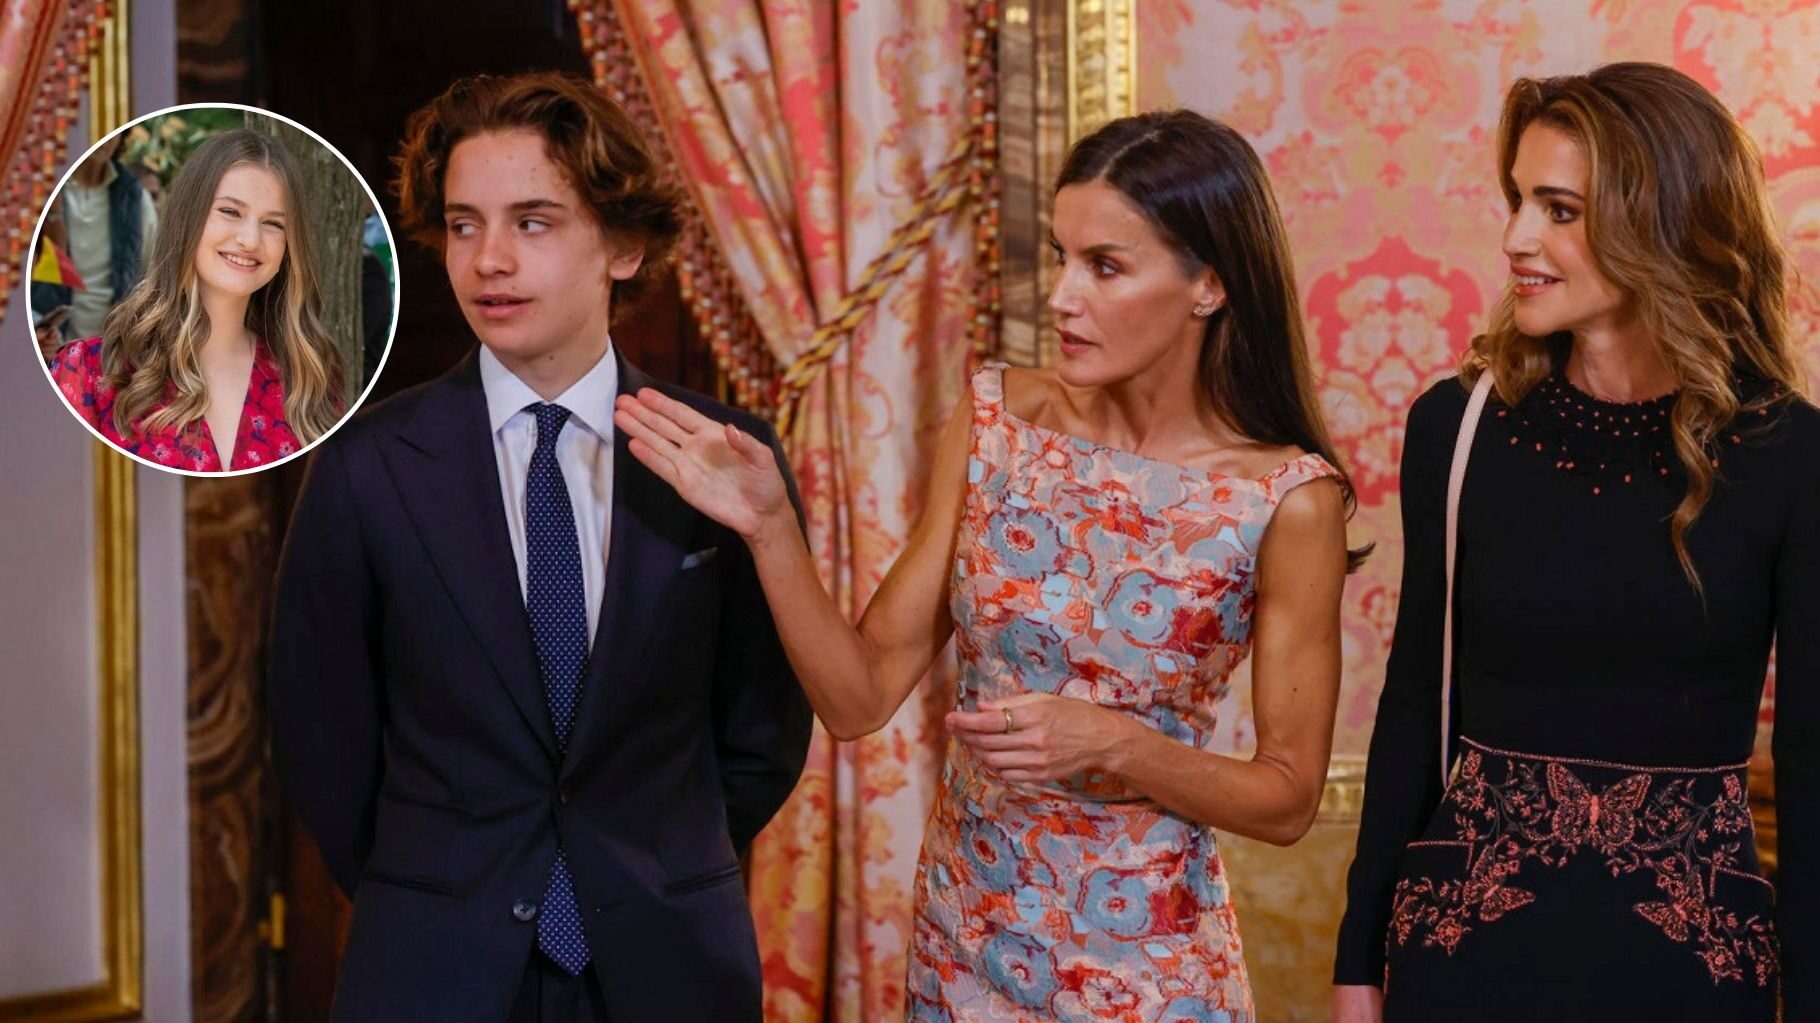 La visita del príncipe Hashem a España podría estar relacionada con la princesa Leonor